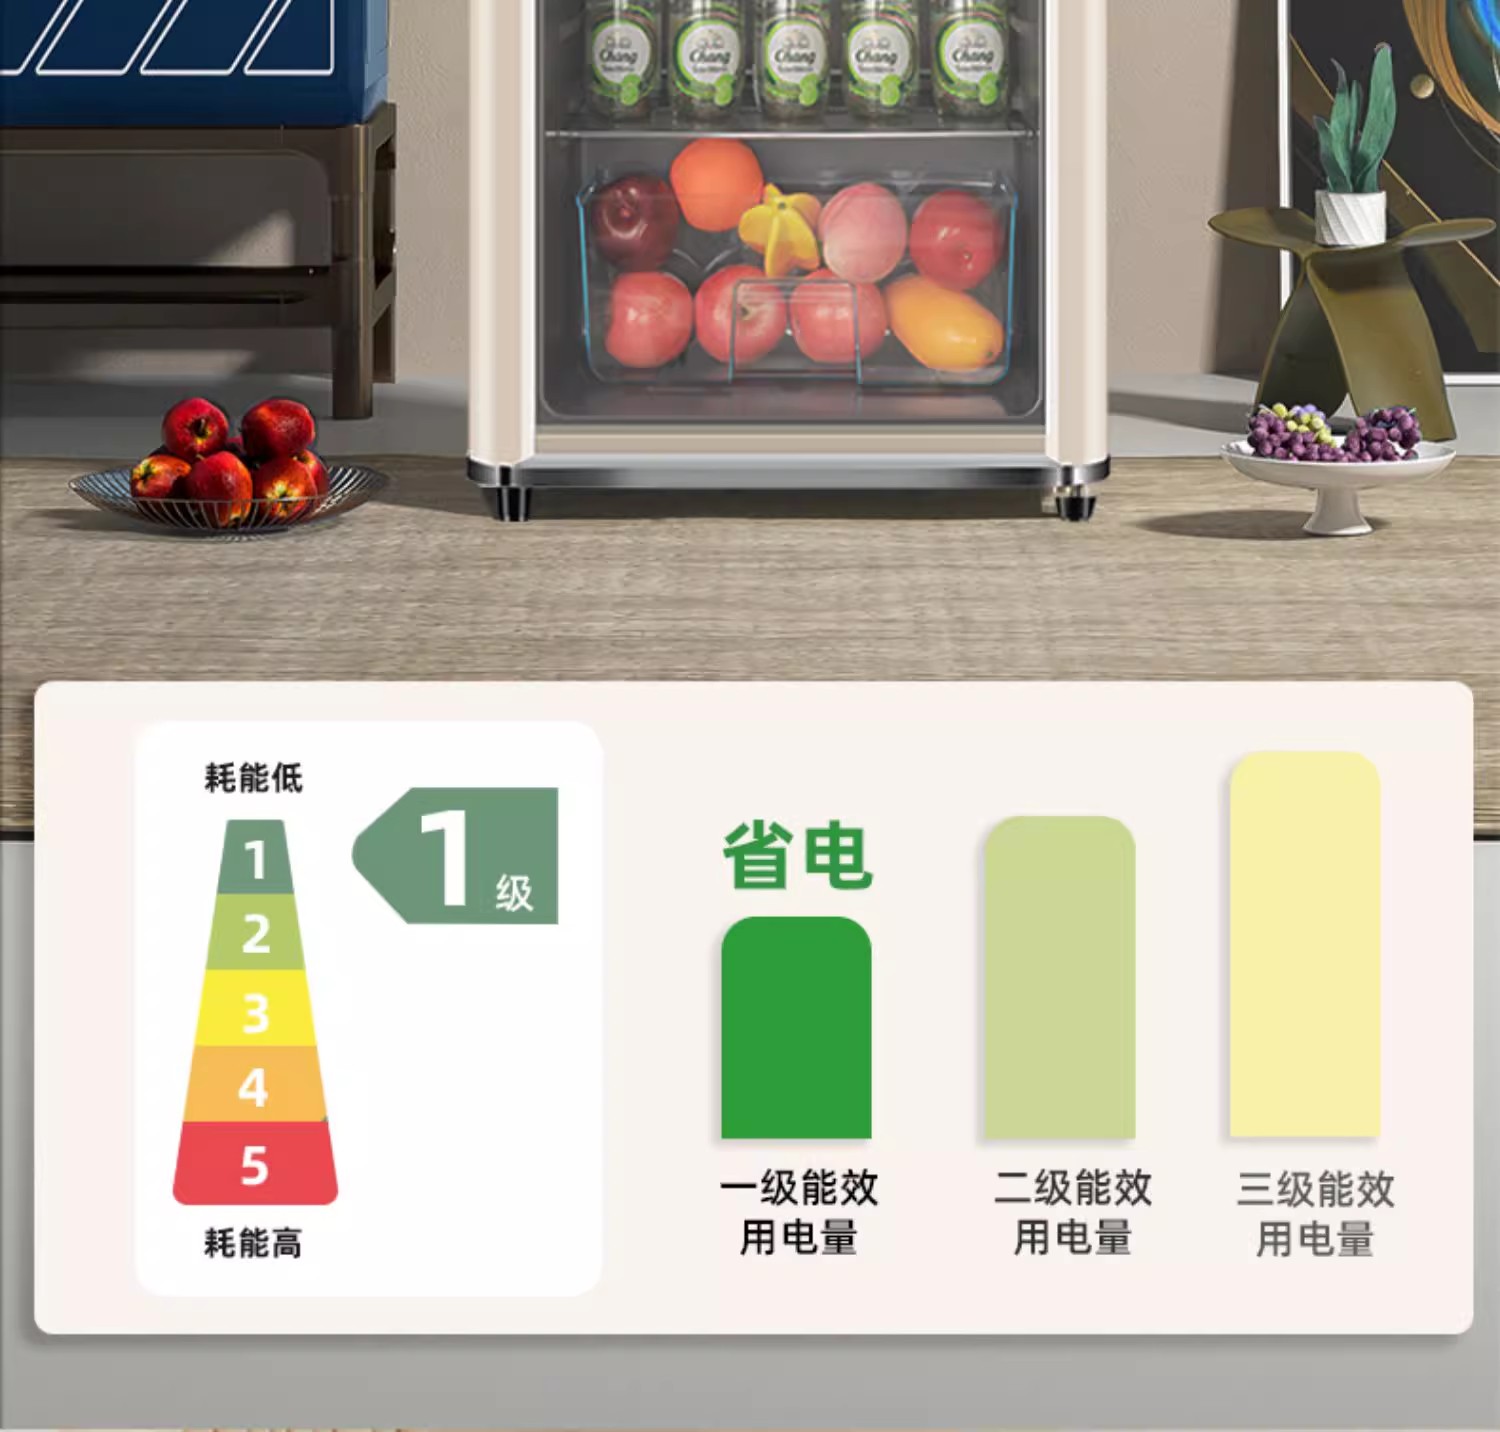 荣事达透明单门冰箱冰吧家用小型冷藏柜商用办公室茶叶饮料红酒柜 - 图3